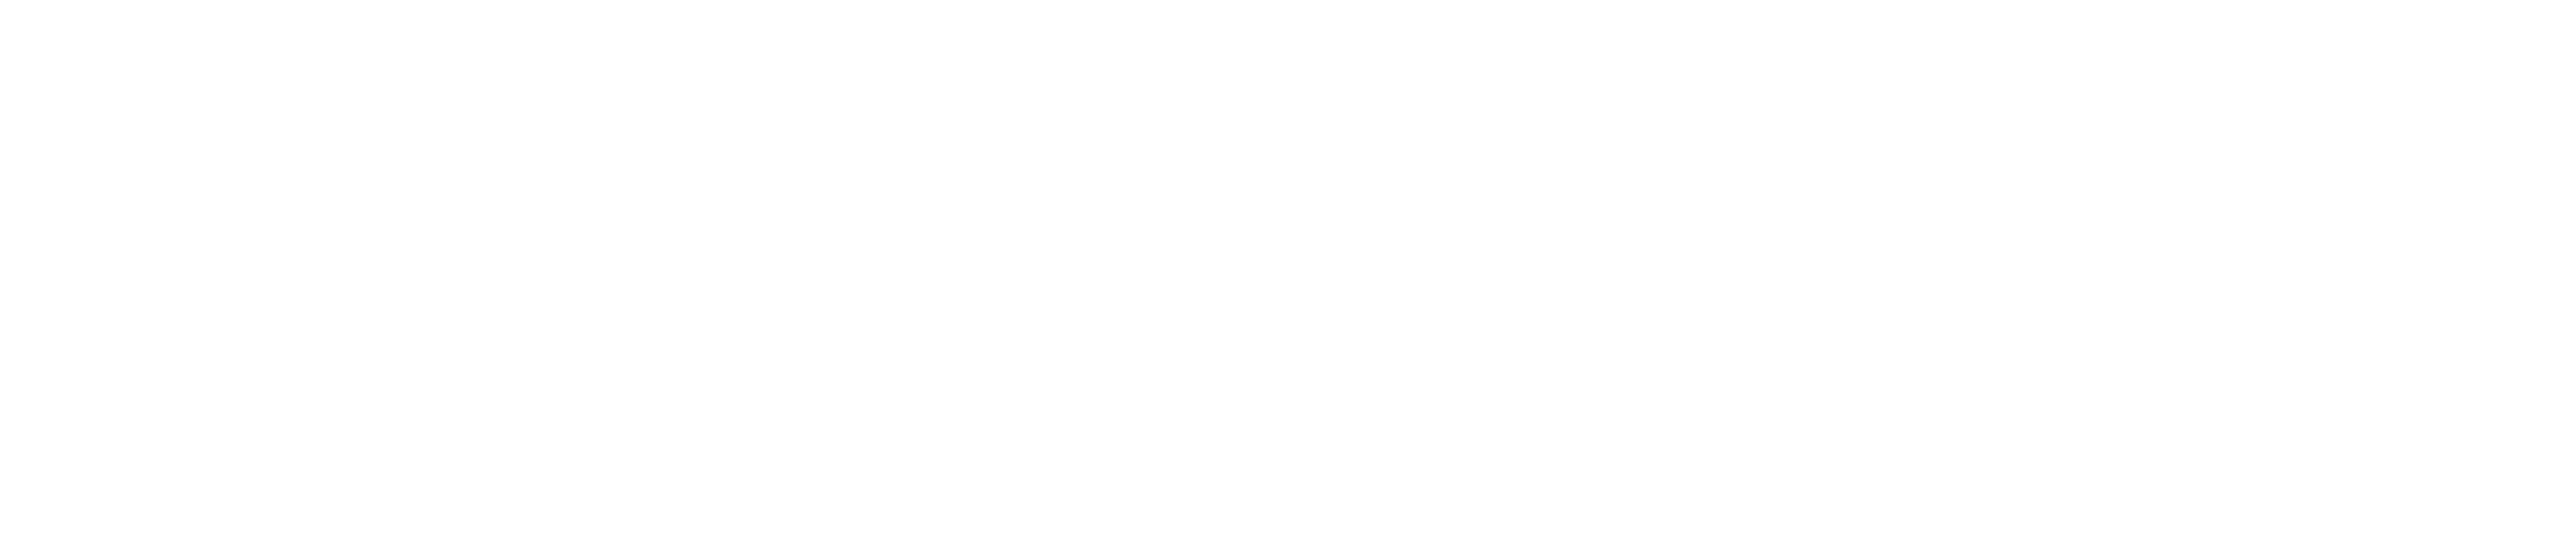 Logo of BRUCELEE